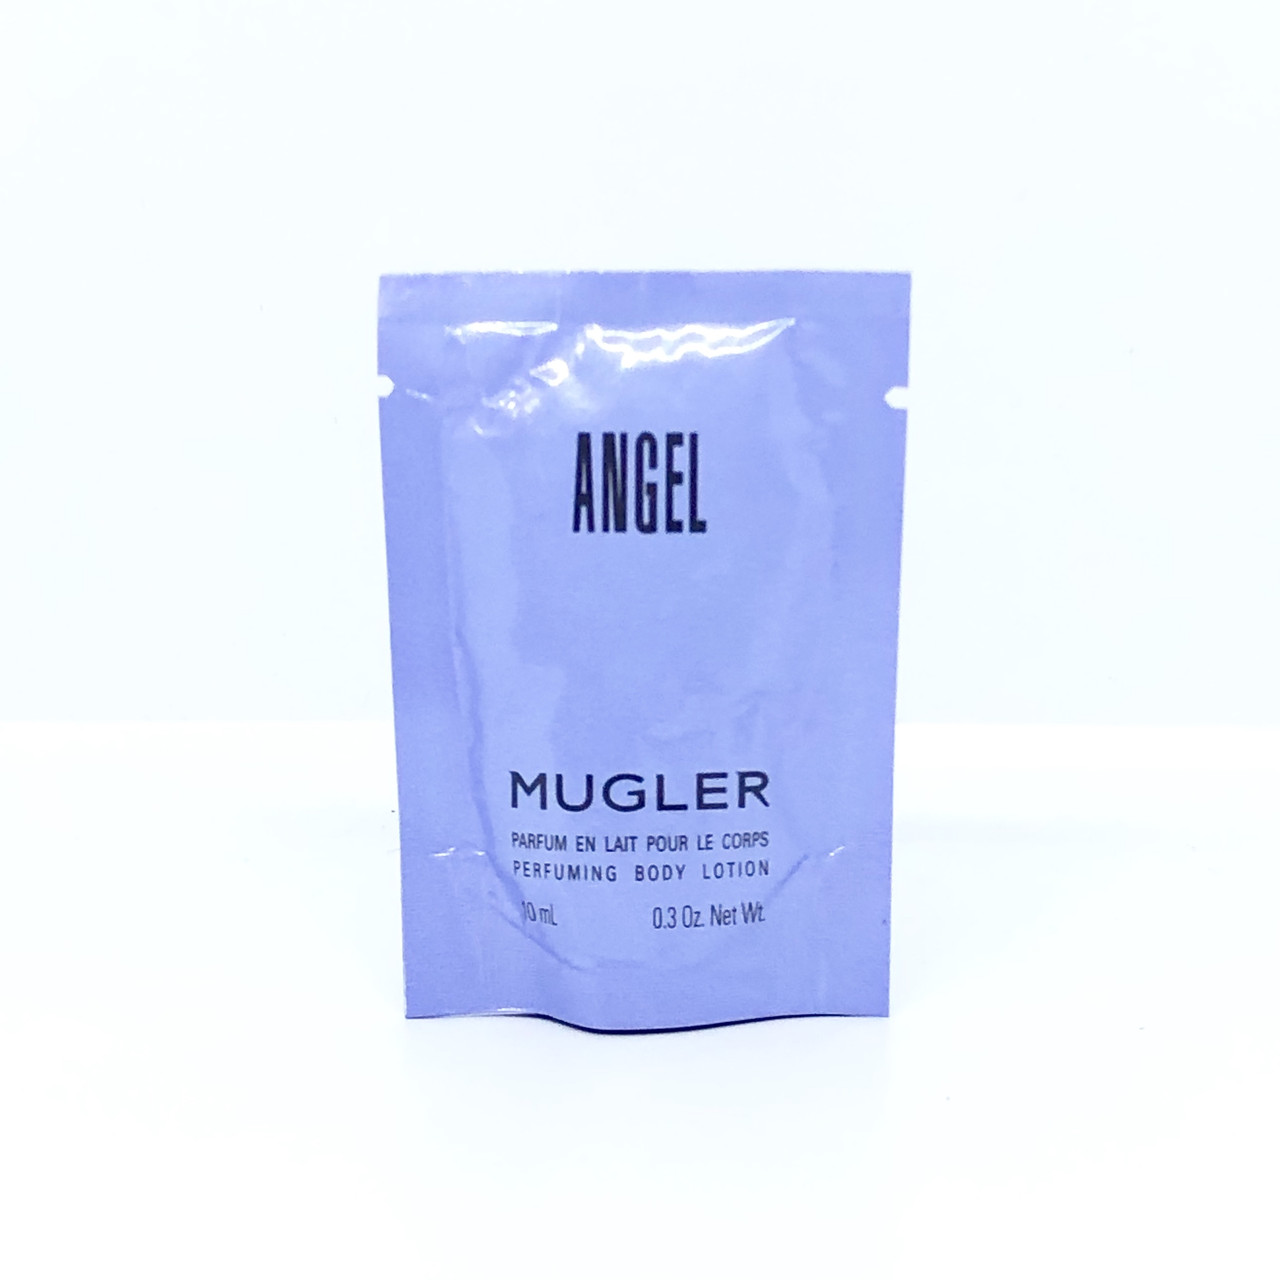 Жіночий парфумований лосьйон для тіла Thierry Mugler Angel body lotion 10ml, солодкий східний аромат